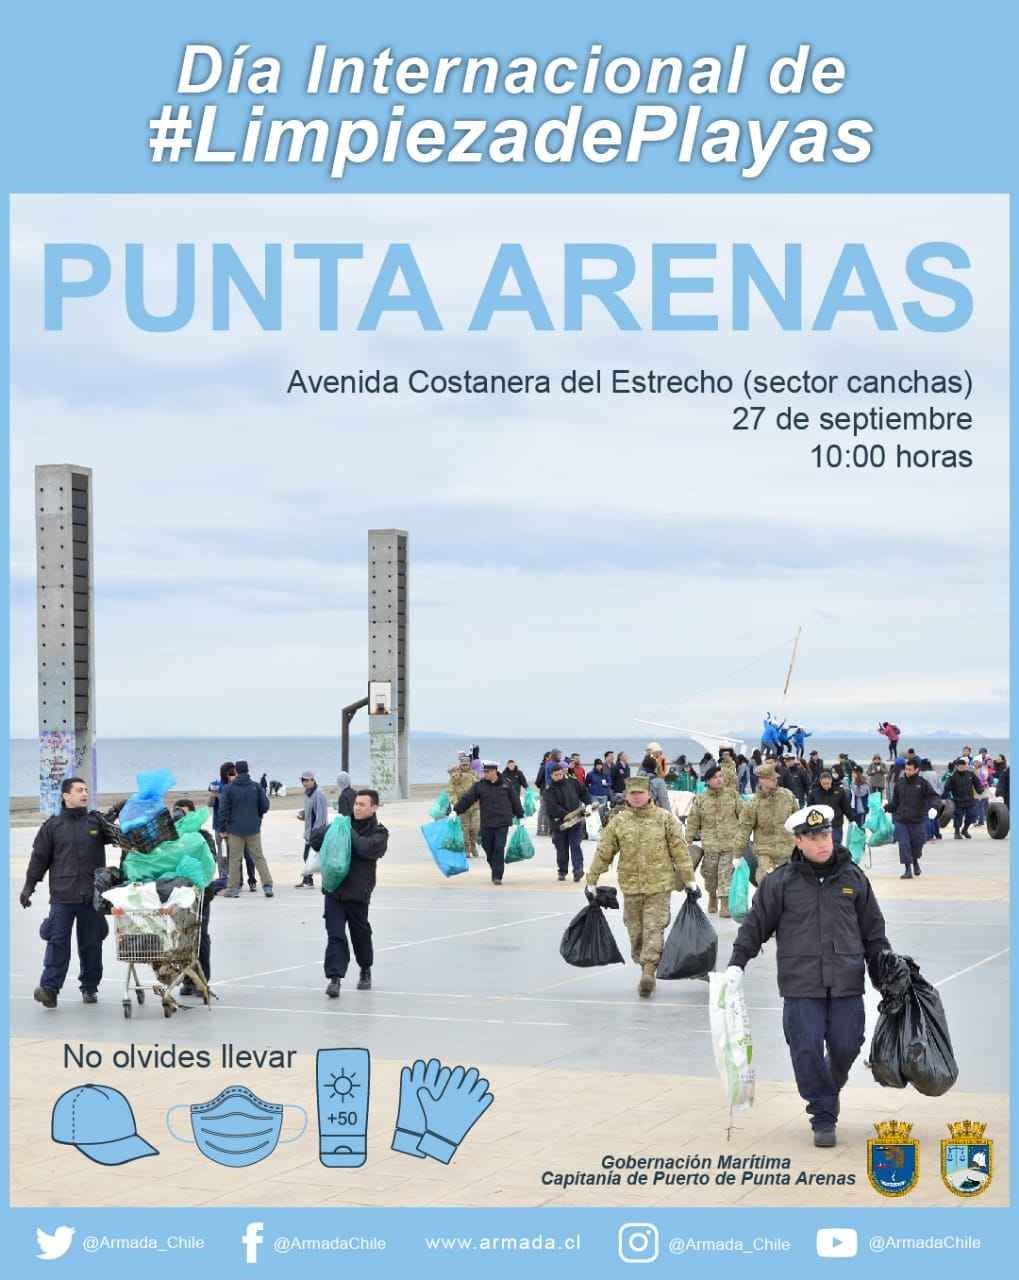 Gobernación Marítima de Punta Arenas invita a participar en limpieza de playas este 27 de septiembre